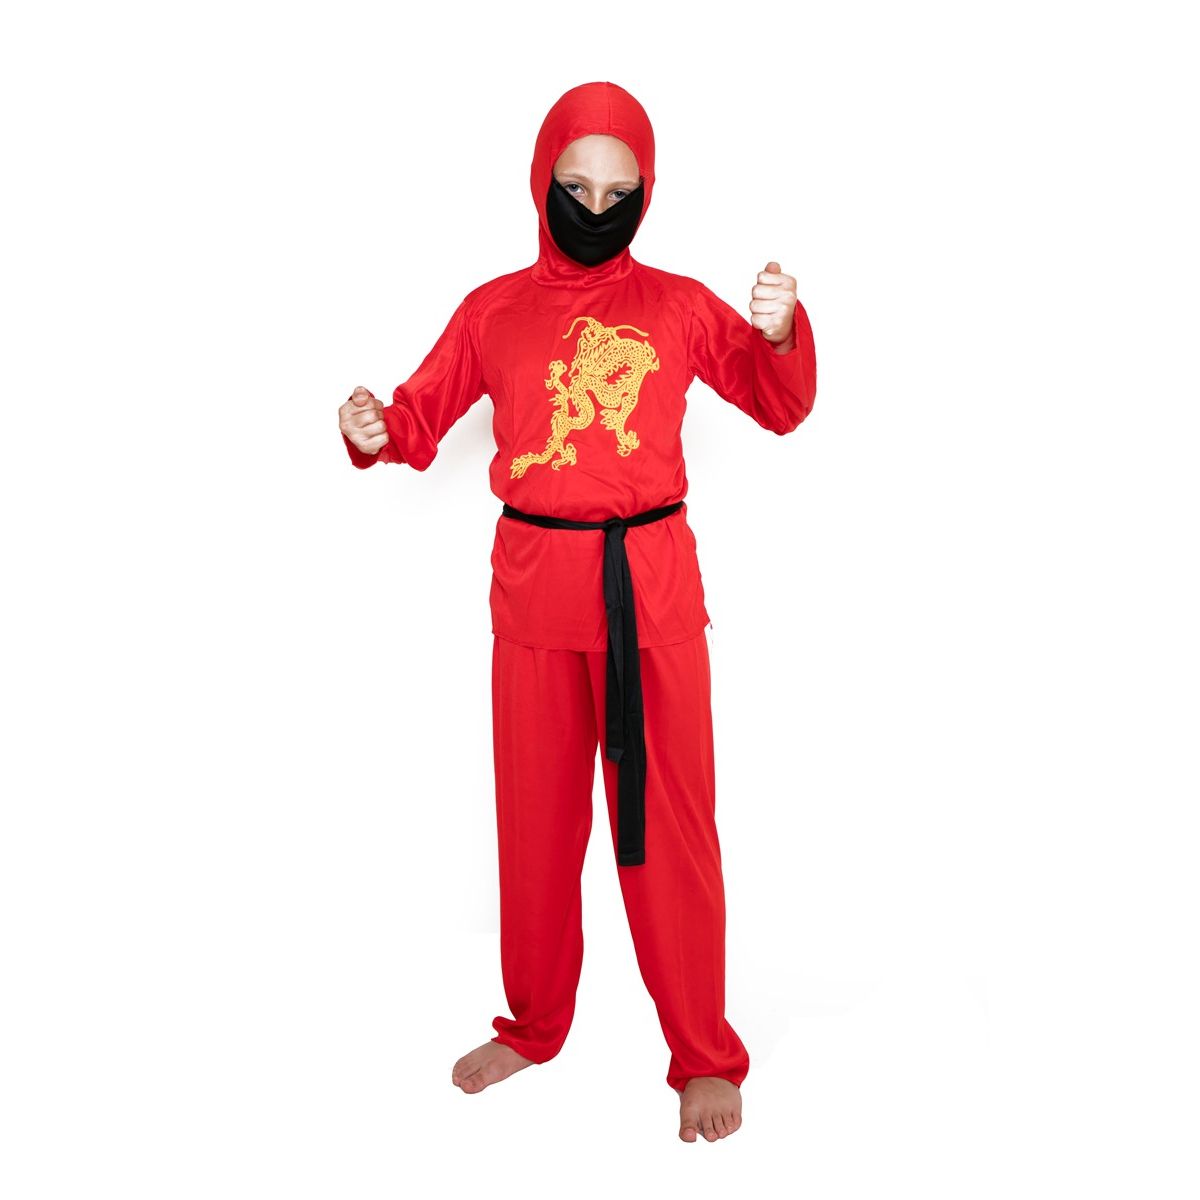 Kostium dziecięcy - Czerwony ninja - rozmiar M Arpex (SD2616-M-7110)